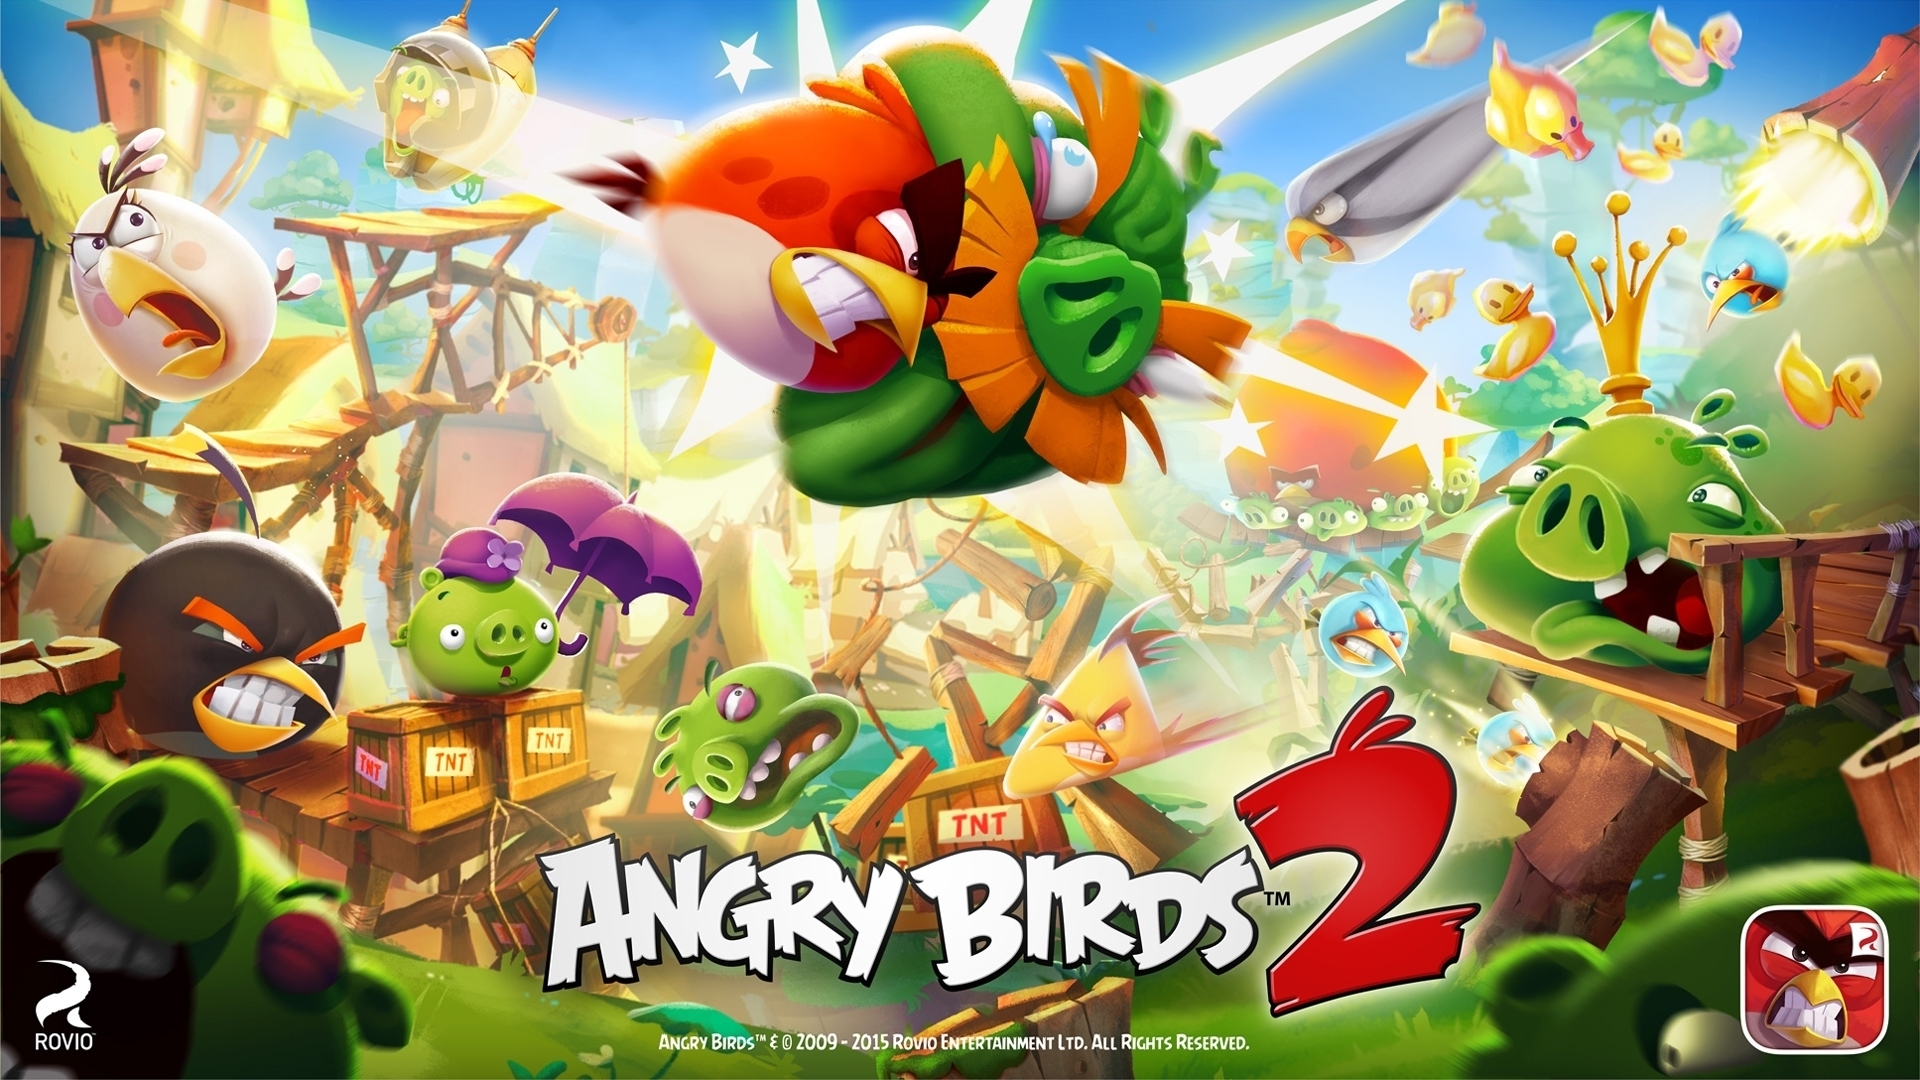 Hình nền về những chú chim điên trong Angry Birds